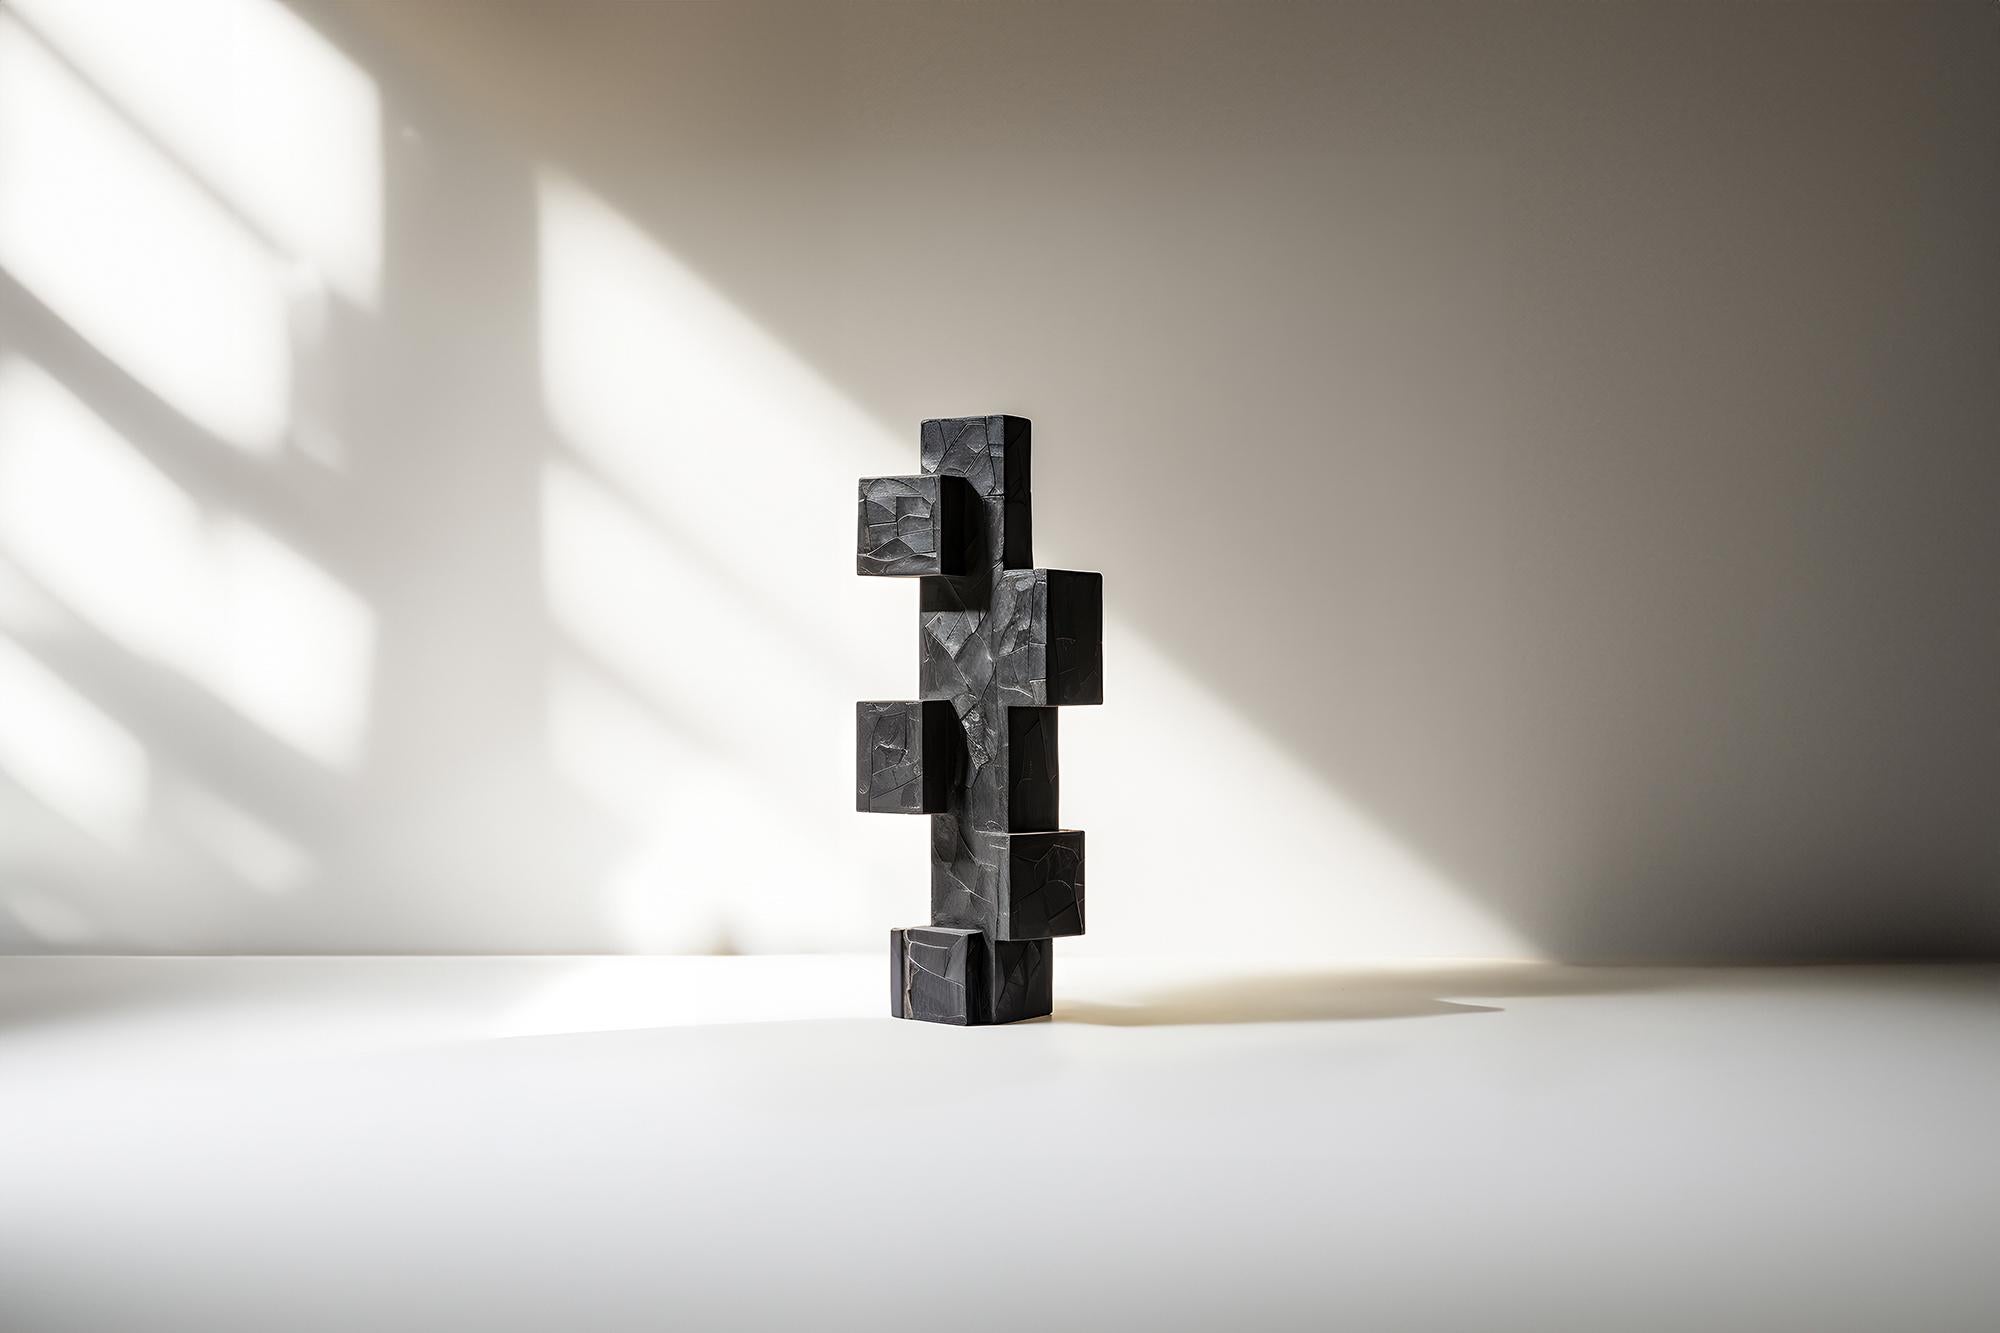 Force artistique invisible n°70 : Table basse de Joel Escalona, mélange de sculptures


Table basse sculpturale en bois massif avec une finition naturelle à base d'eau ou carbonisée. En raison de la nature du processus de production, chaque pièce